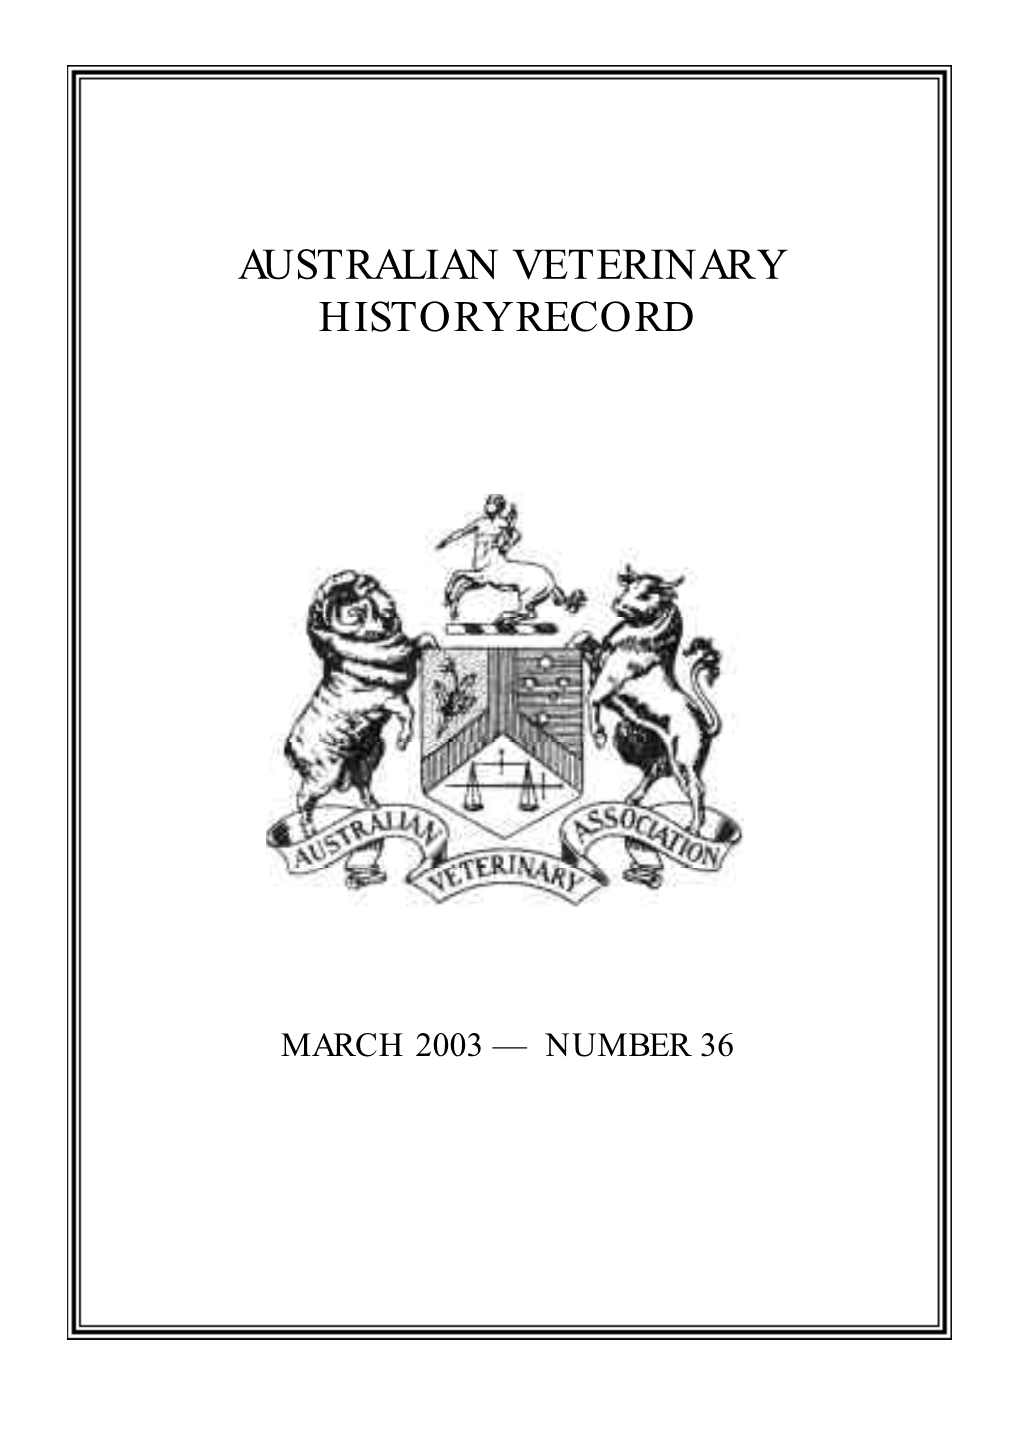 Australian Veterinary History Record